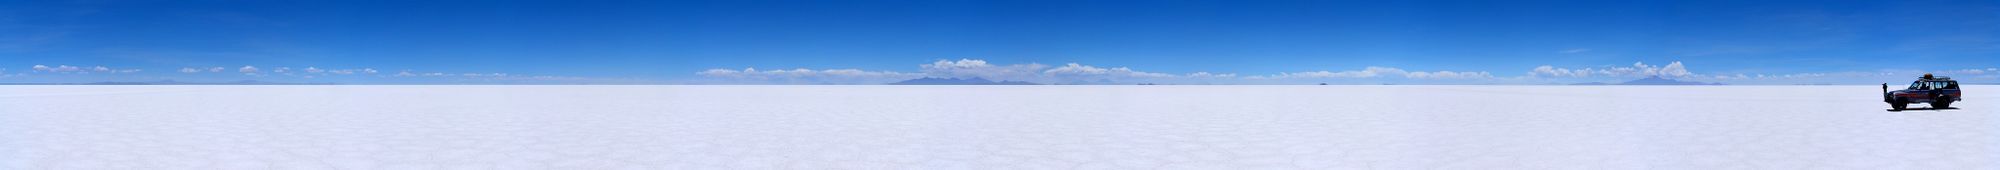 y...¡Aquí esta! admire el hermoso Salar de Uyuni...¿Ve que no se perdía nada?